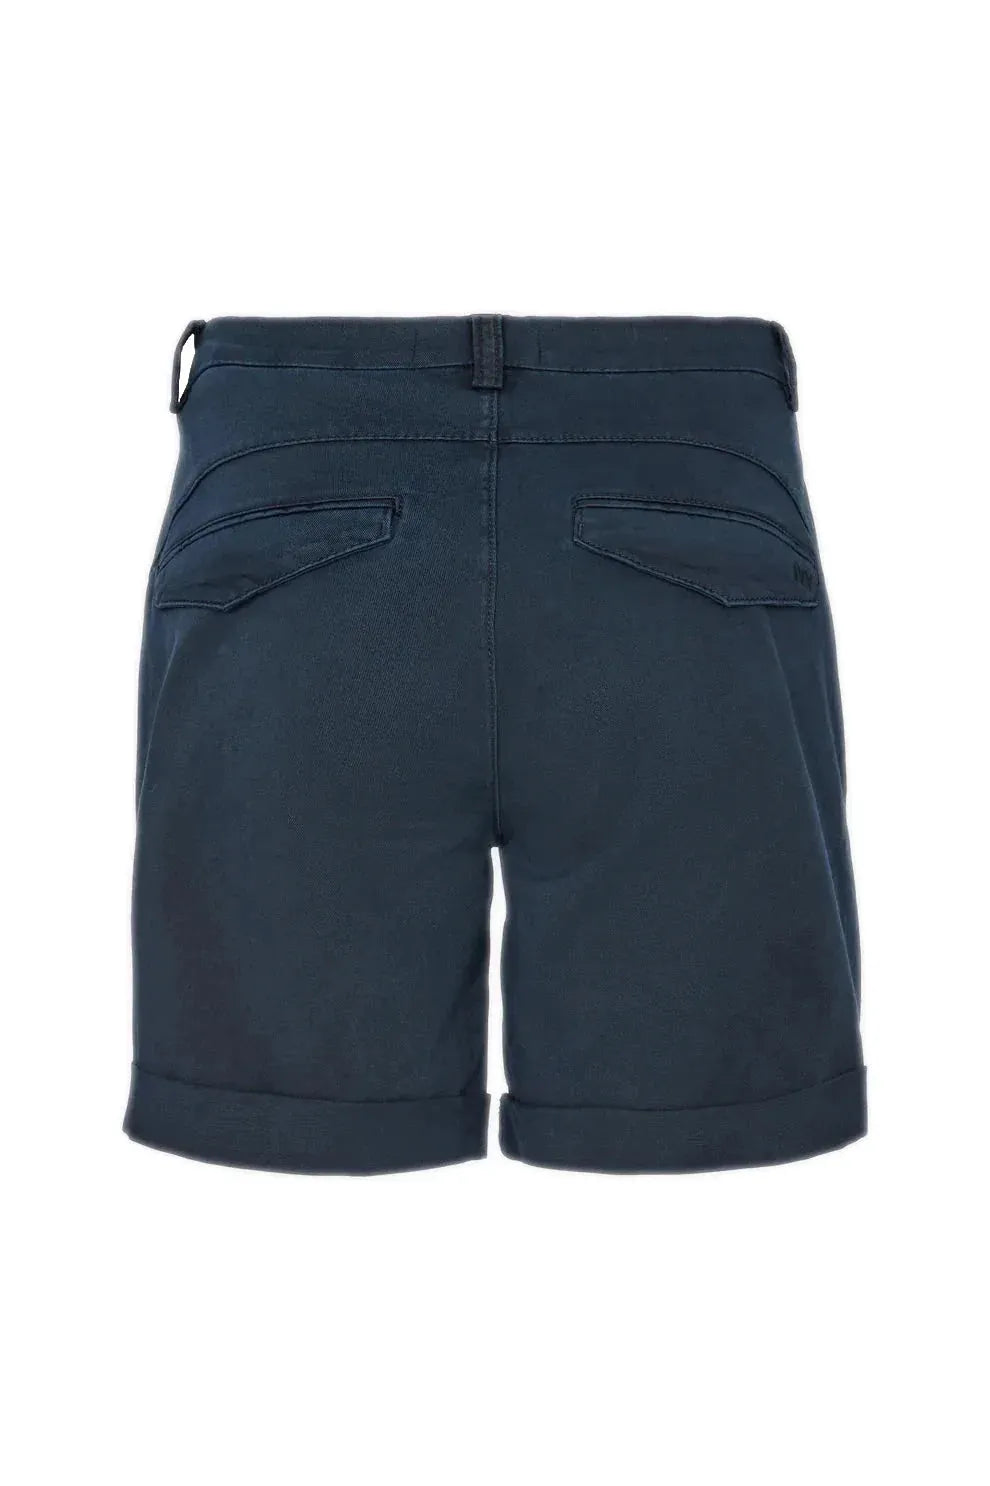 Shorts | IVY COPENHAGEN Chino Karmey shorts, navy